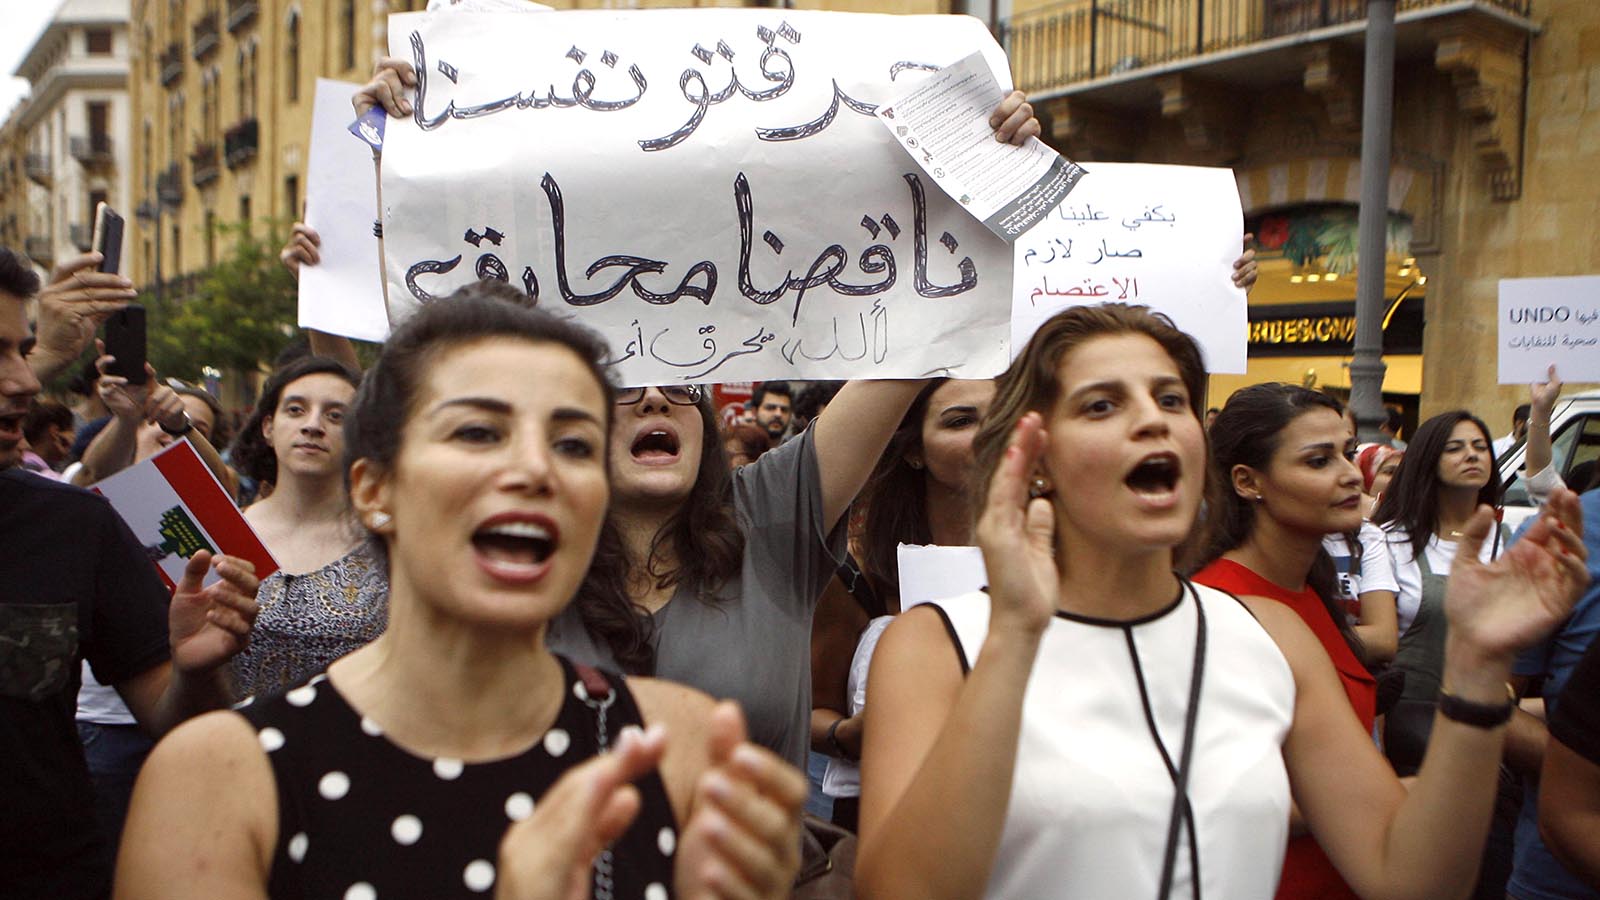 المجلس البلدي أمام اختبار "المحرقة" وتسميم بيروت